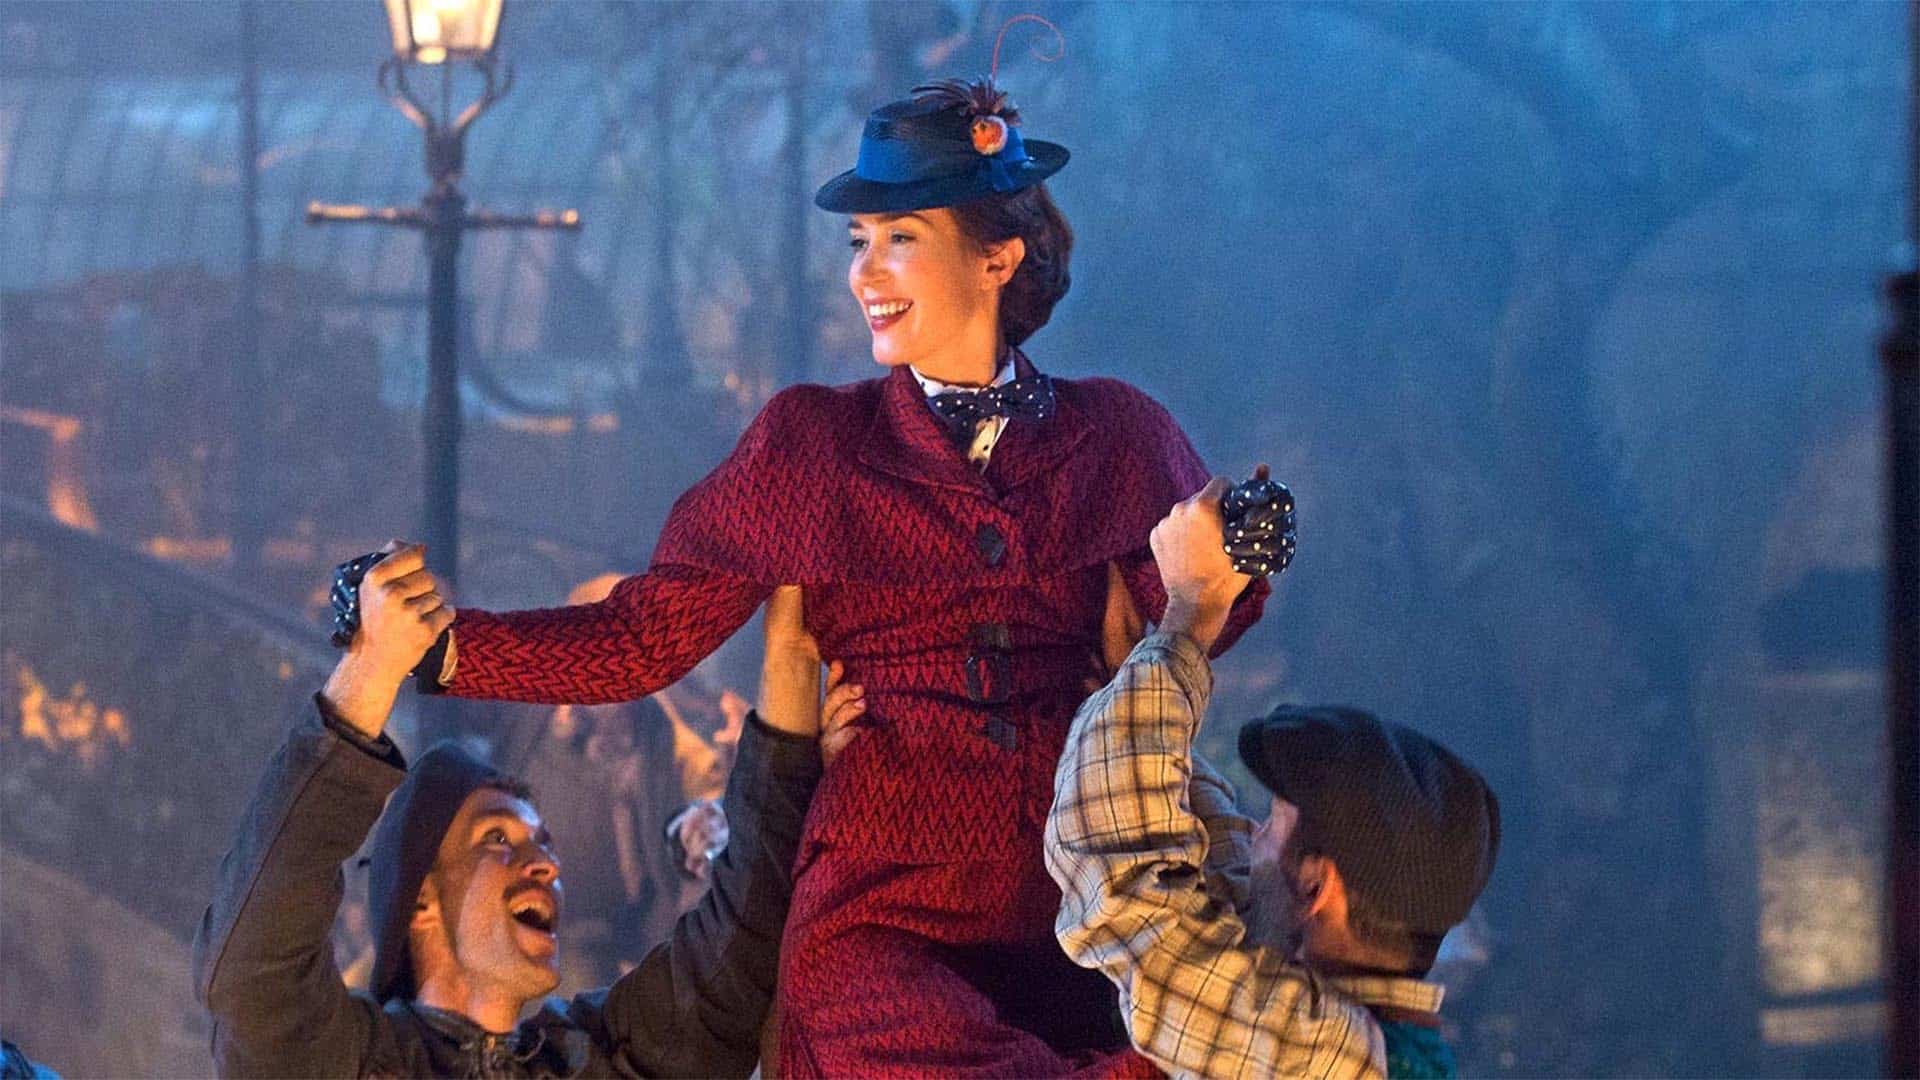 Il Ritorno di Mary Poppins: le reazioni alla prima proiezione sono positive